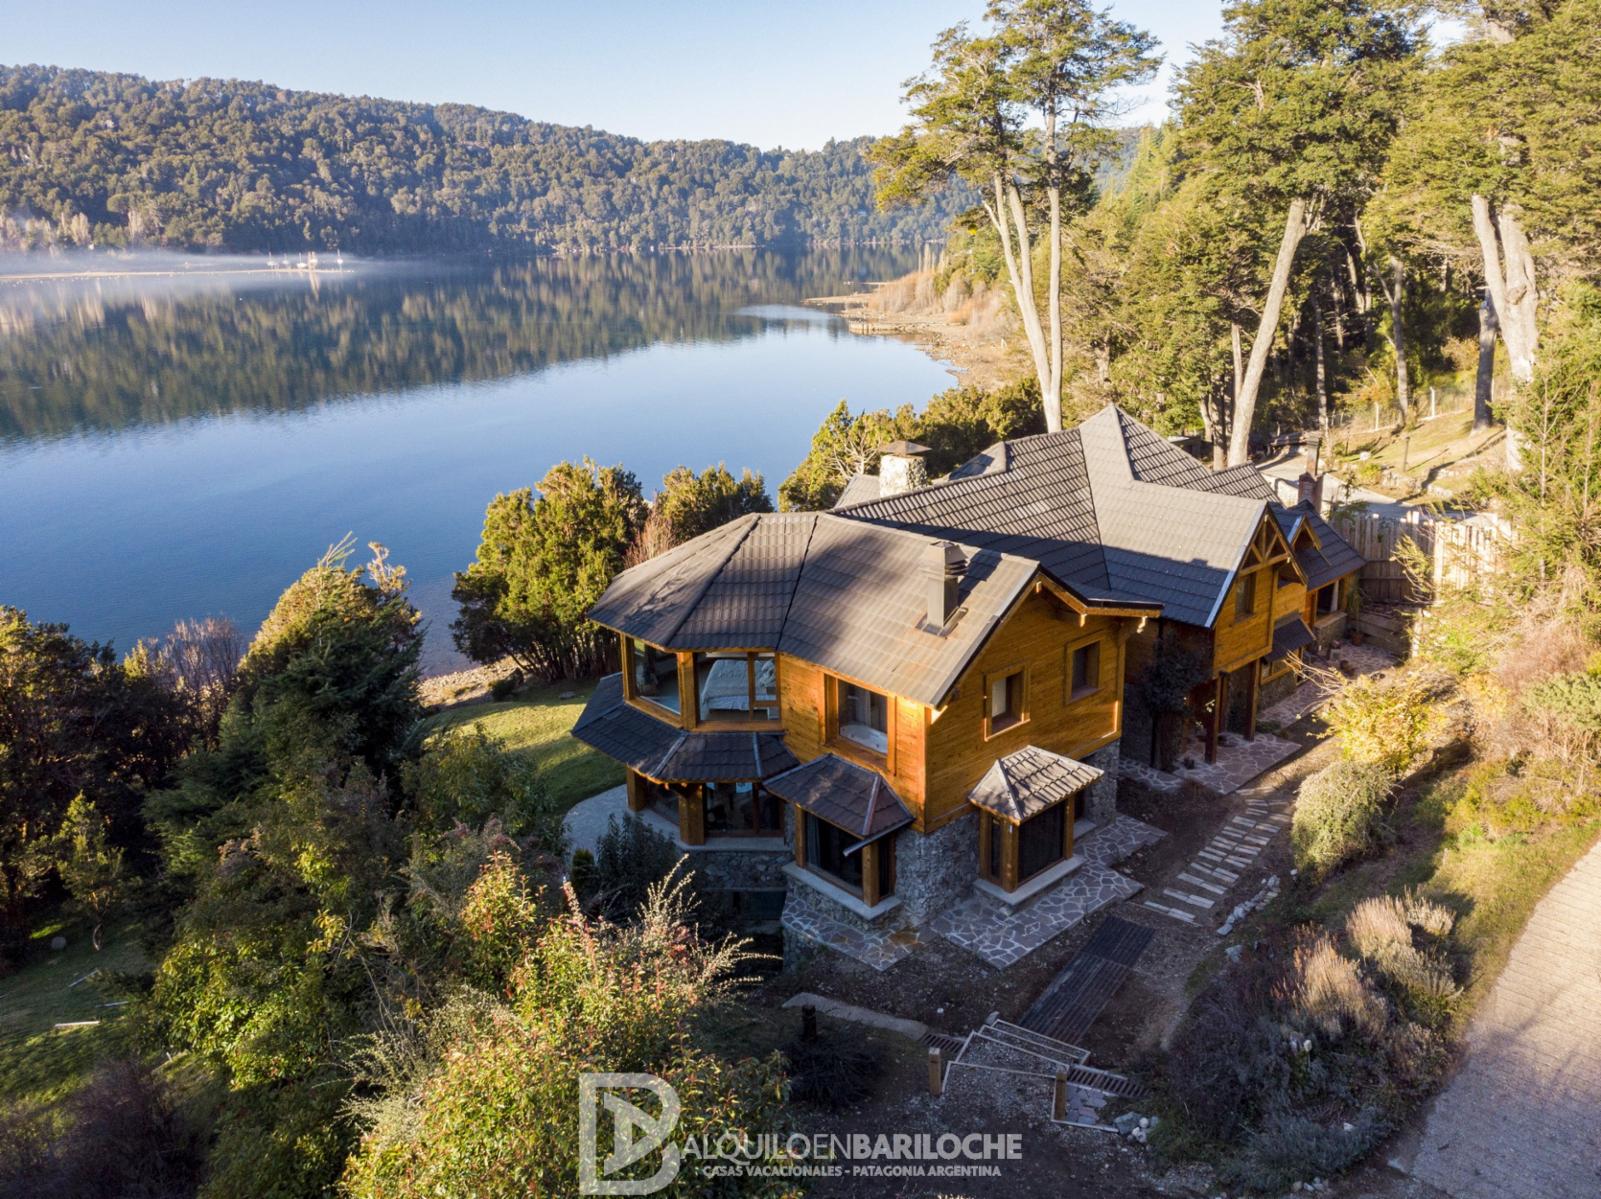 Alquiler Casa en Bariloche con Piscina Climatizada y Costa De Lago